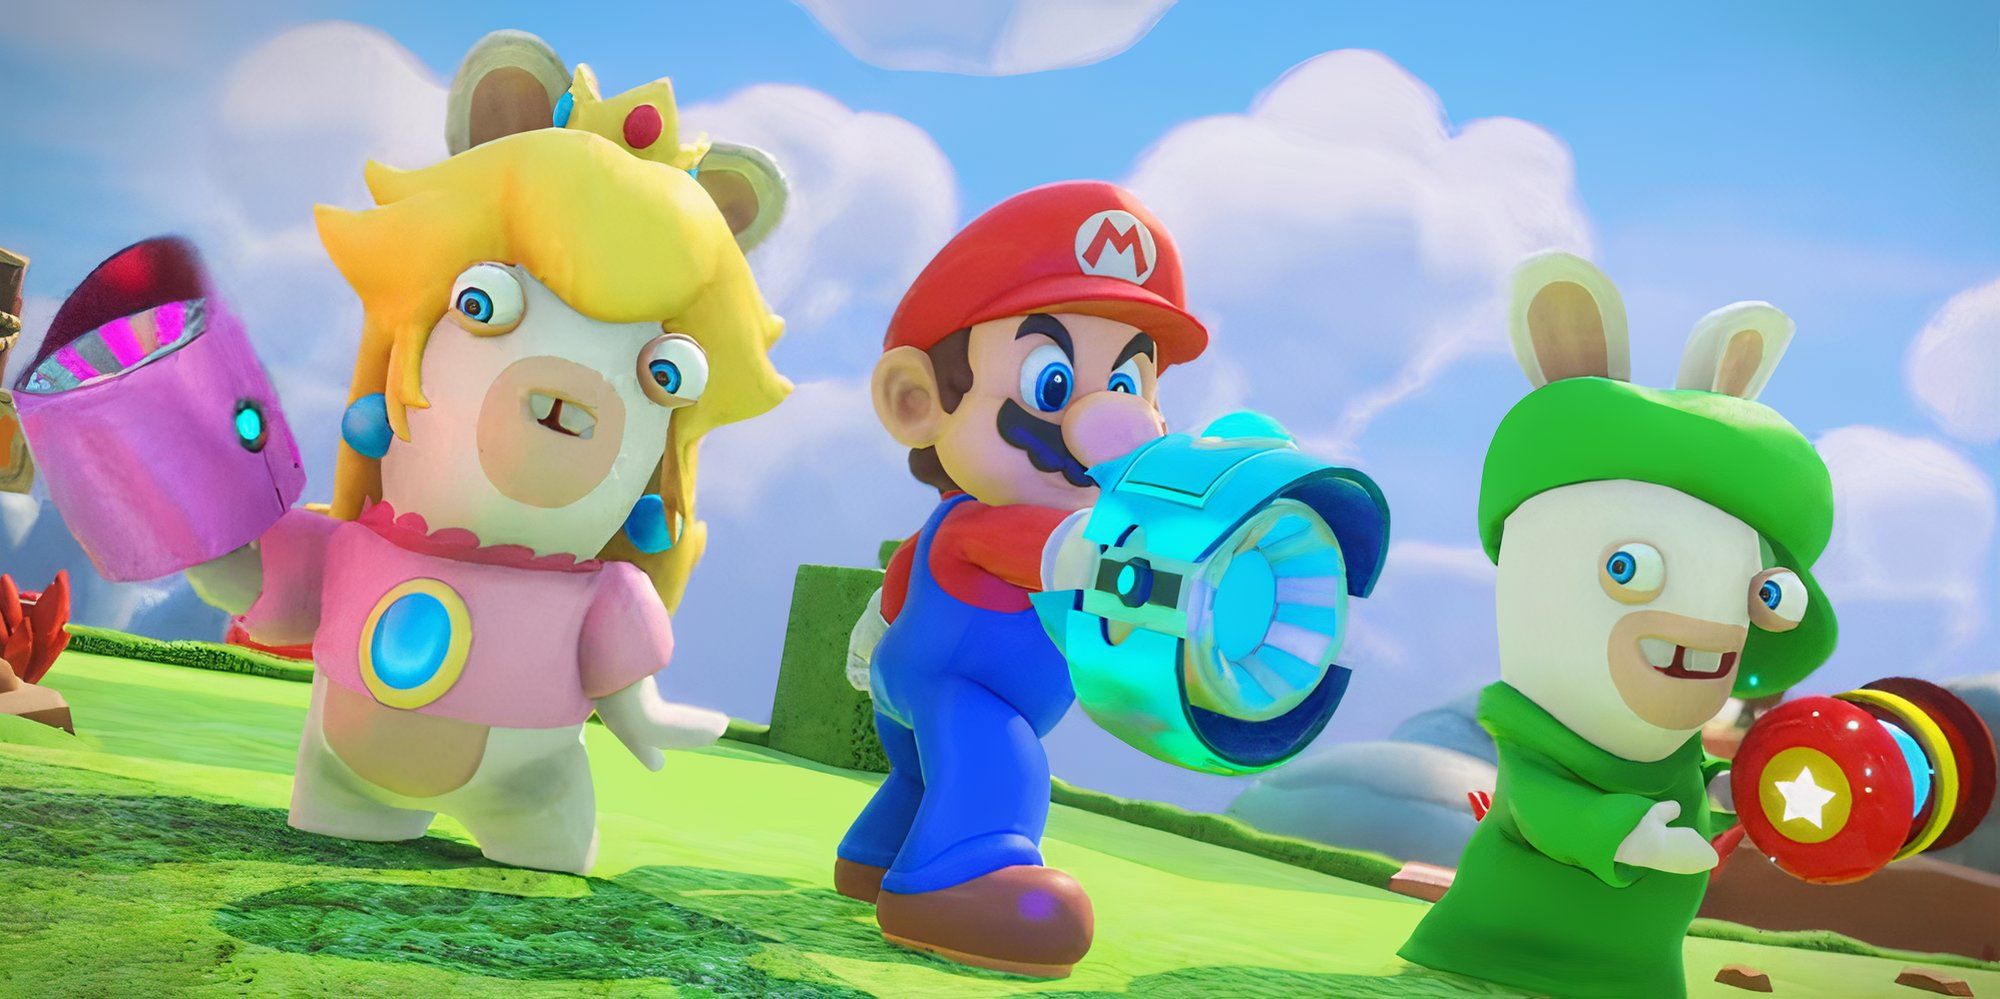 Mario with Rabbids in Mario + Rabbids Kingdom Battle